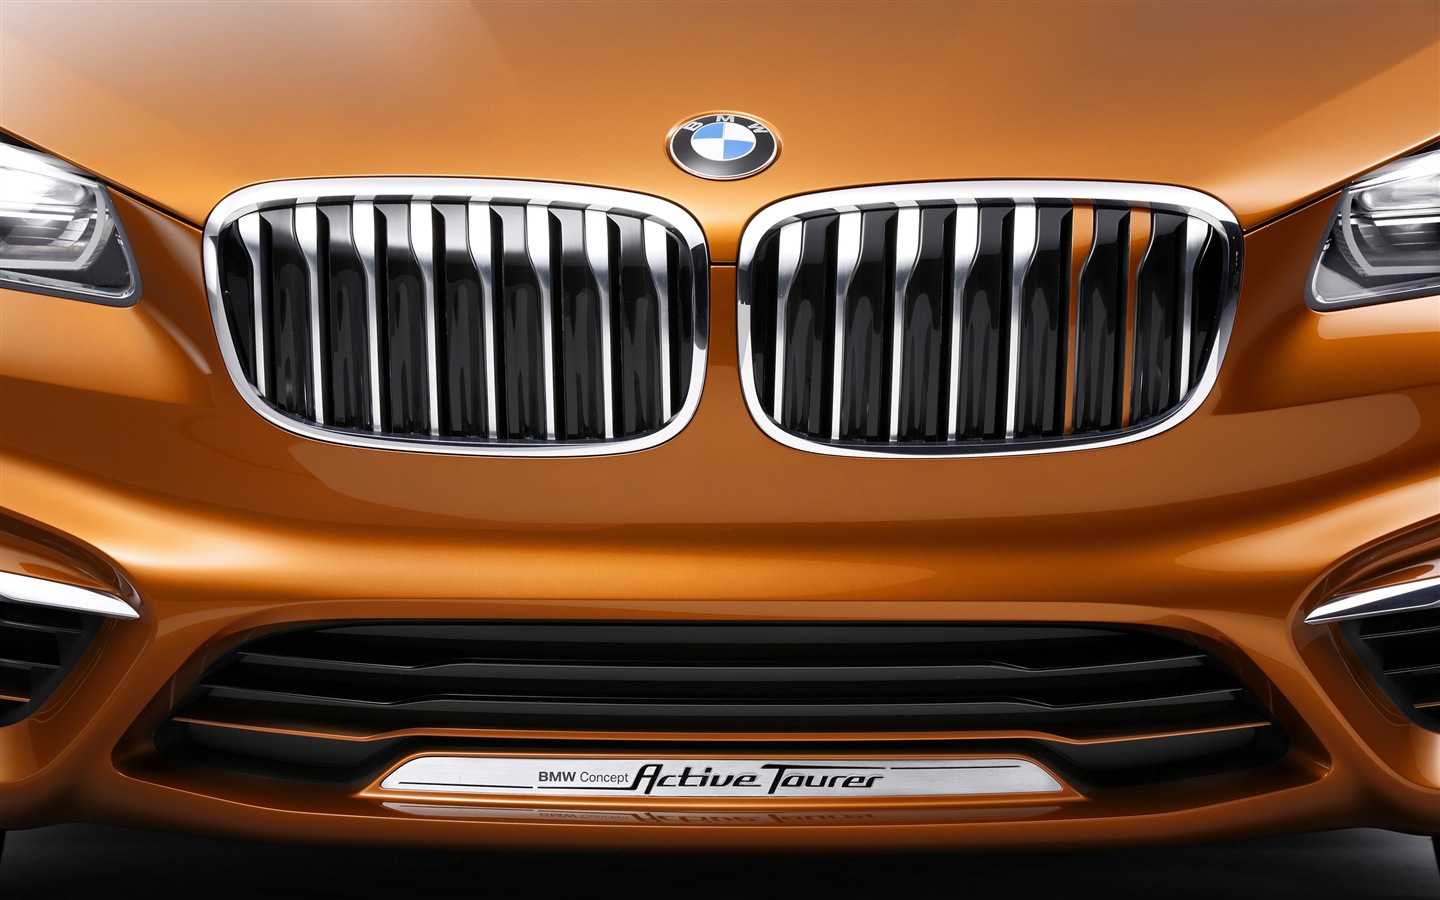 2013 BMW Concept Active Tourer 宝马旅行车 高清壁纸15 - 1440x900